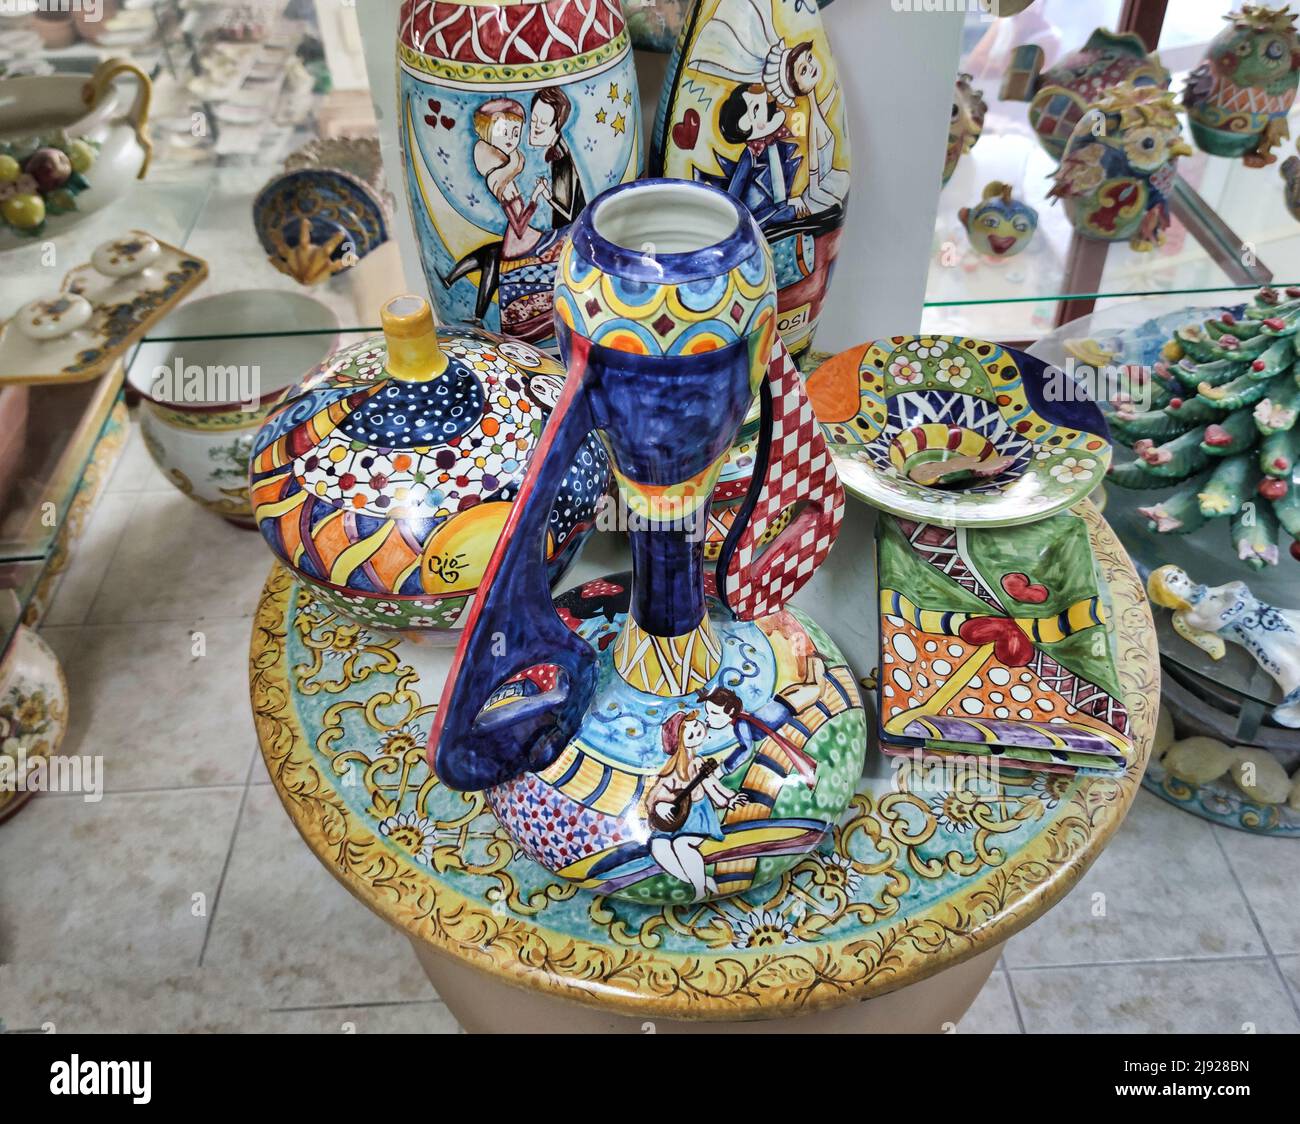 Céramiques célèbres produites sur la côte amalfitaine par des artisans qualifiés, Positano, Salerno, Campanie, Italie. Banque D'Images